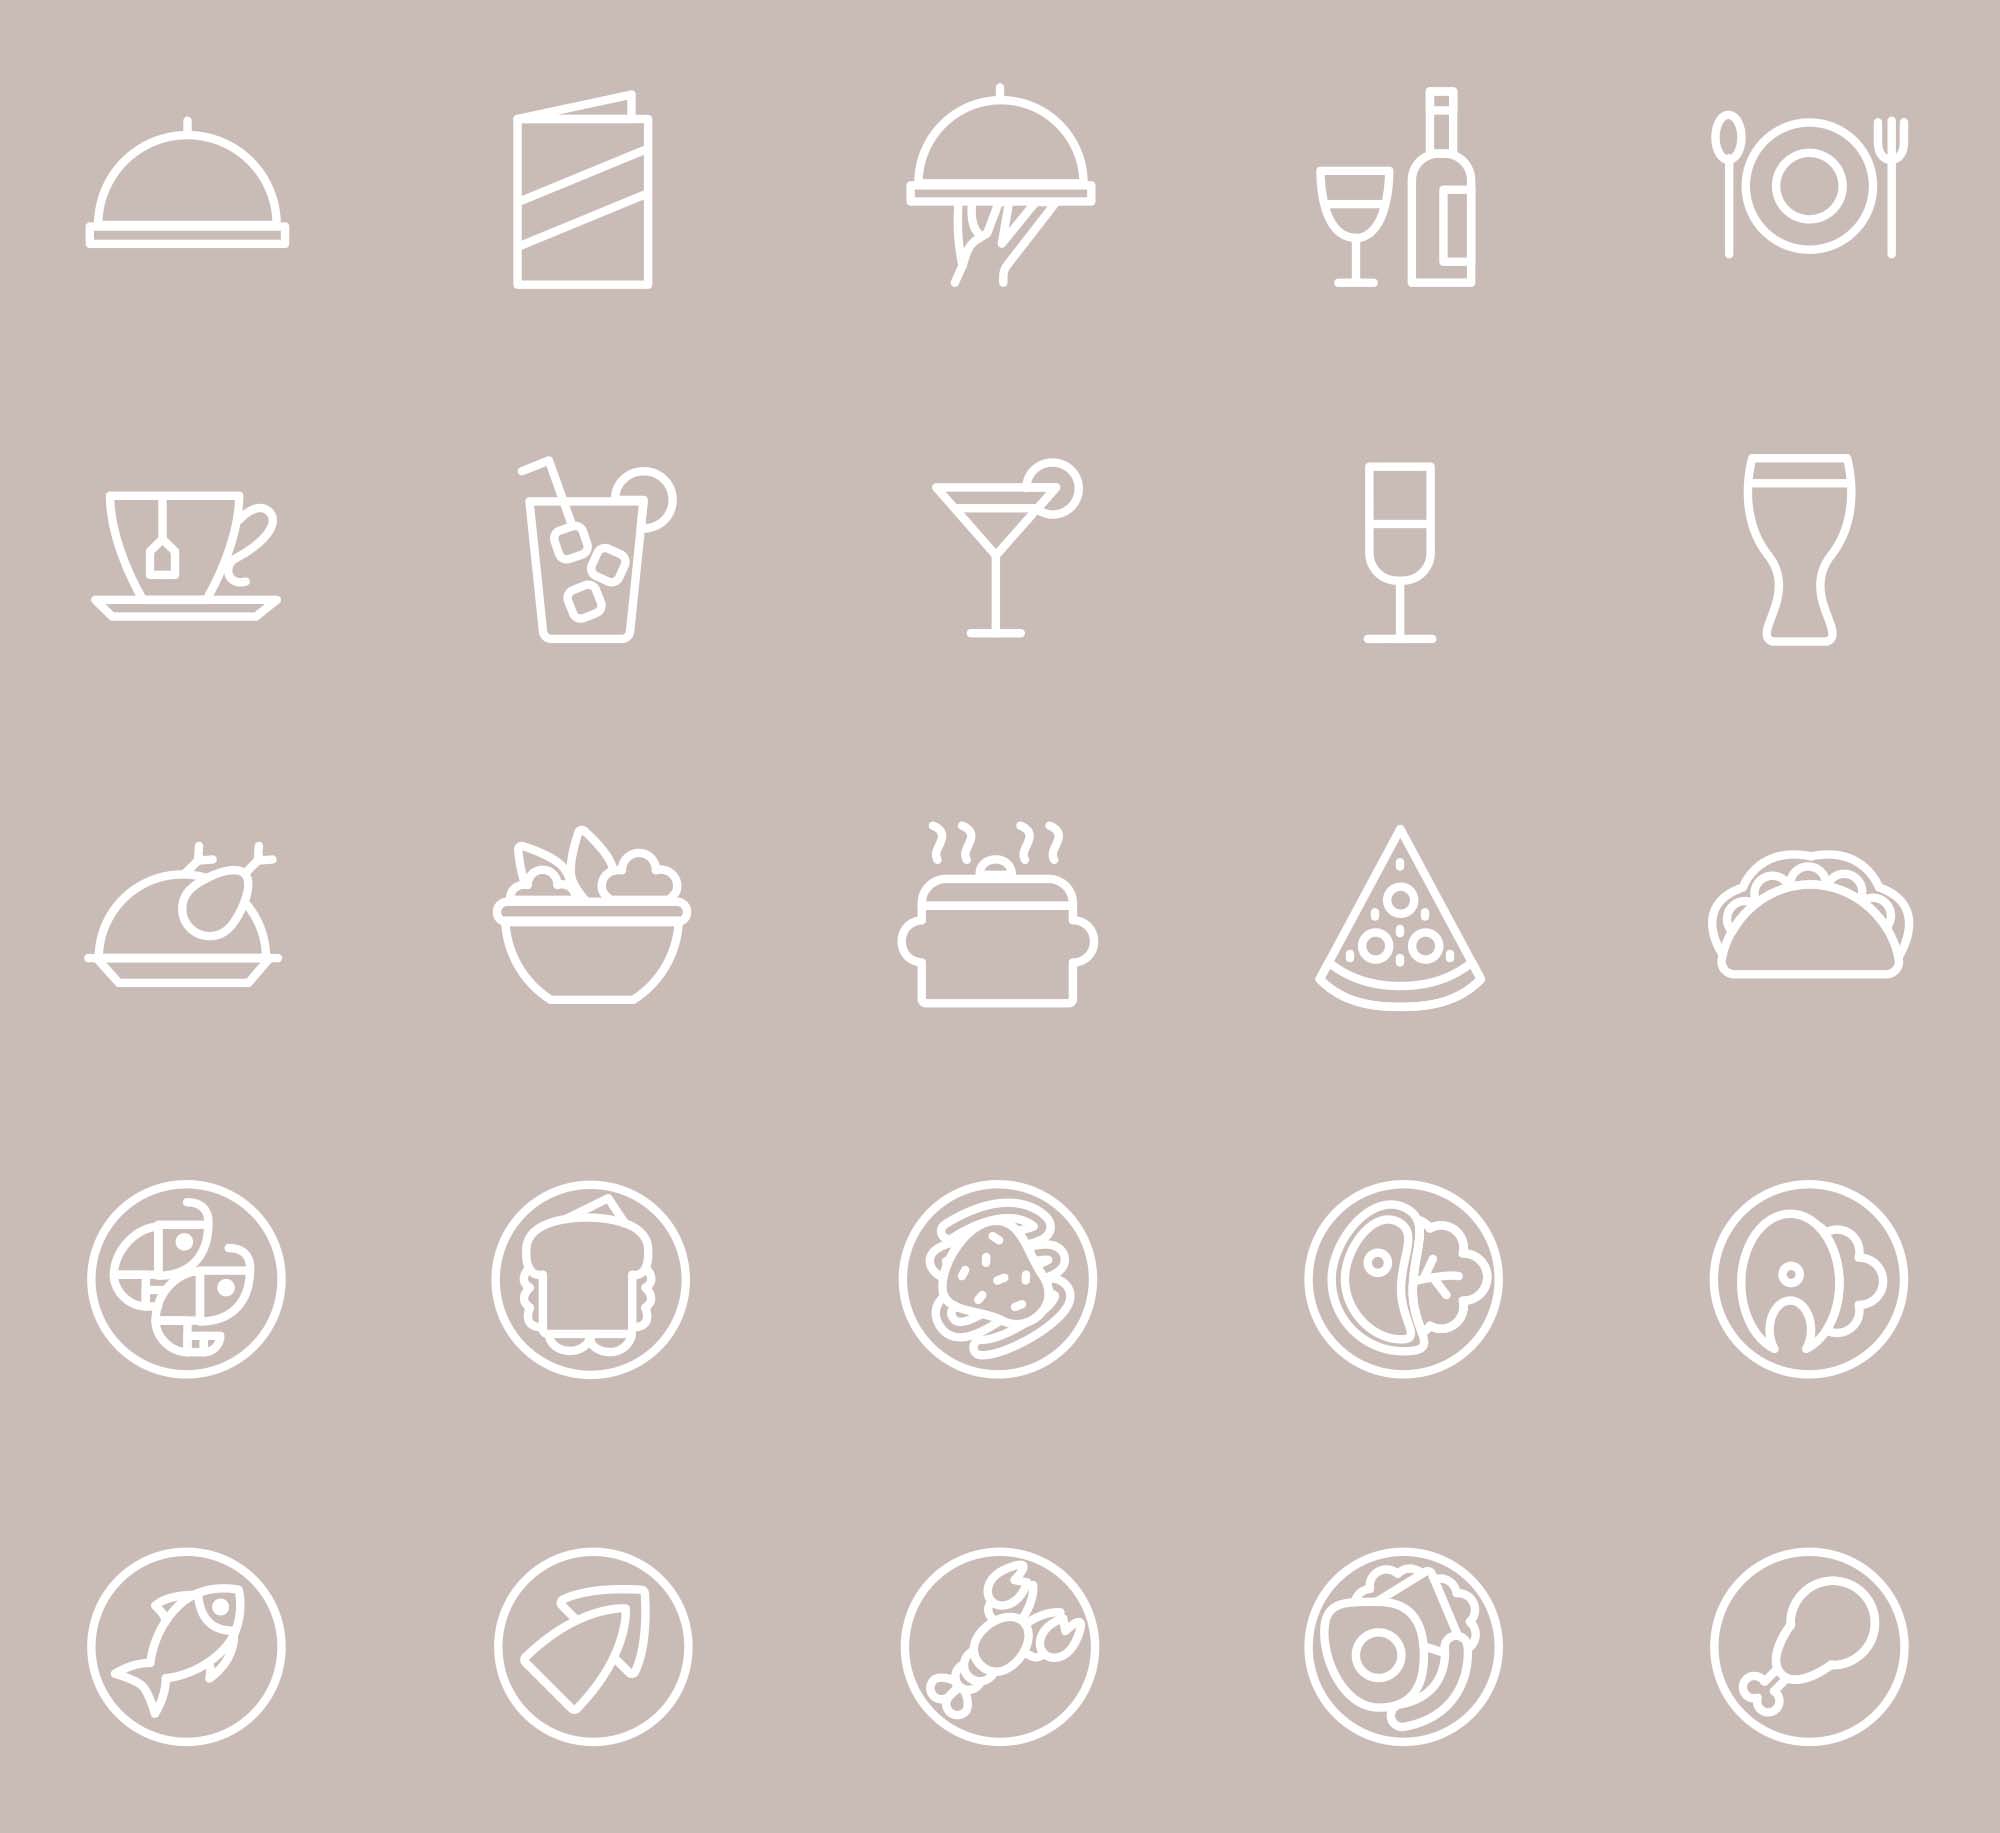 25枚餐厅菜单设计 可用的矢量线性素材库精选图标 25 Restaurant Menu Icons插图(2)